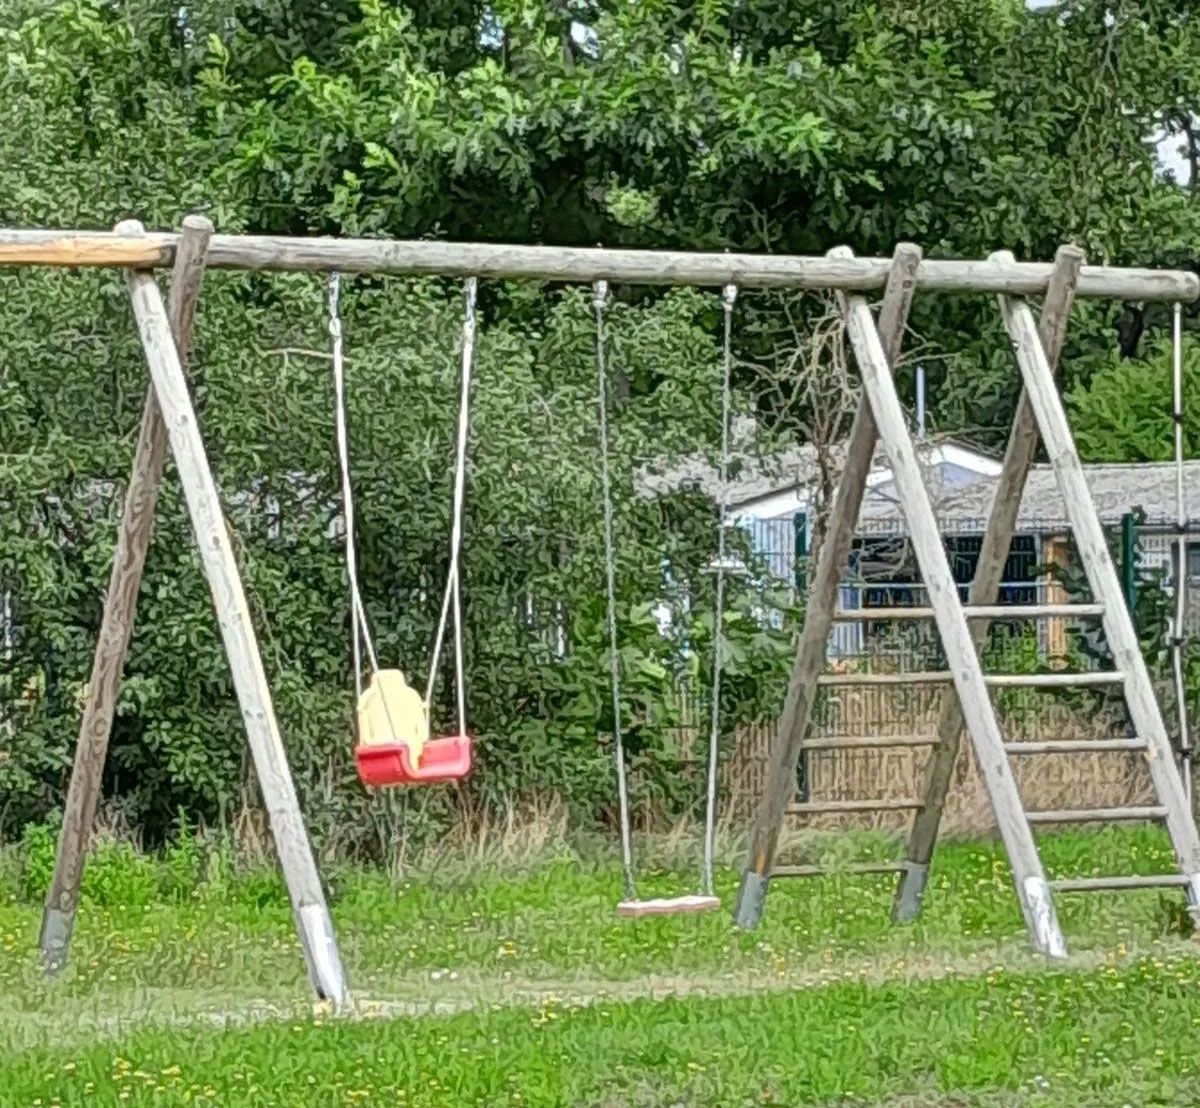 ein Holzspielplatz mit Schaukeln im Gras - Spielplatzprüfung Franziska Müller aus Lüchow im Wendland